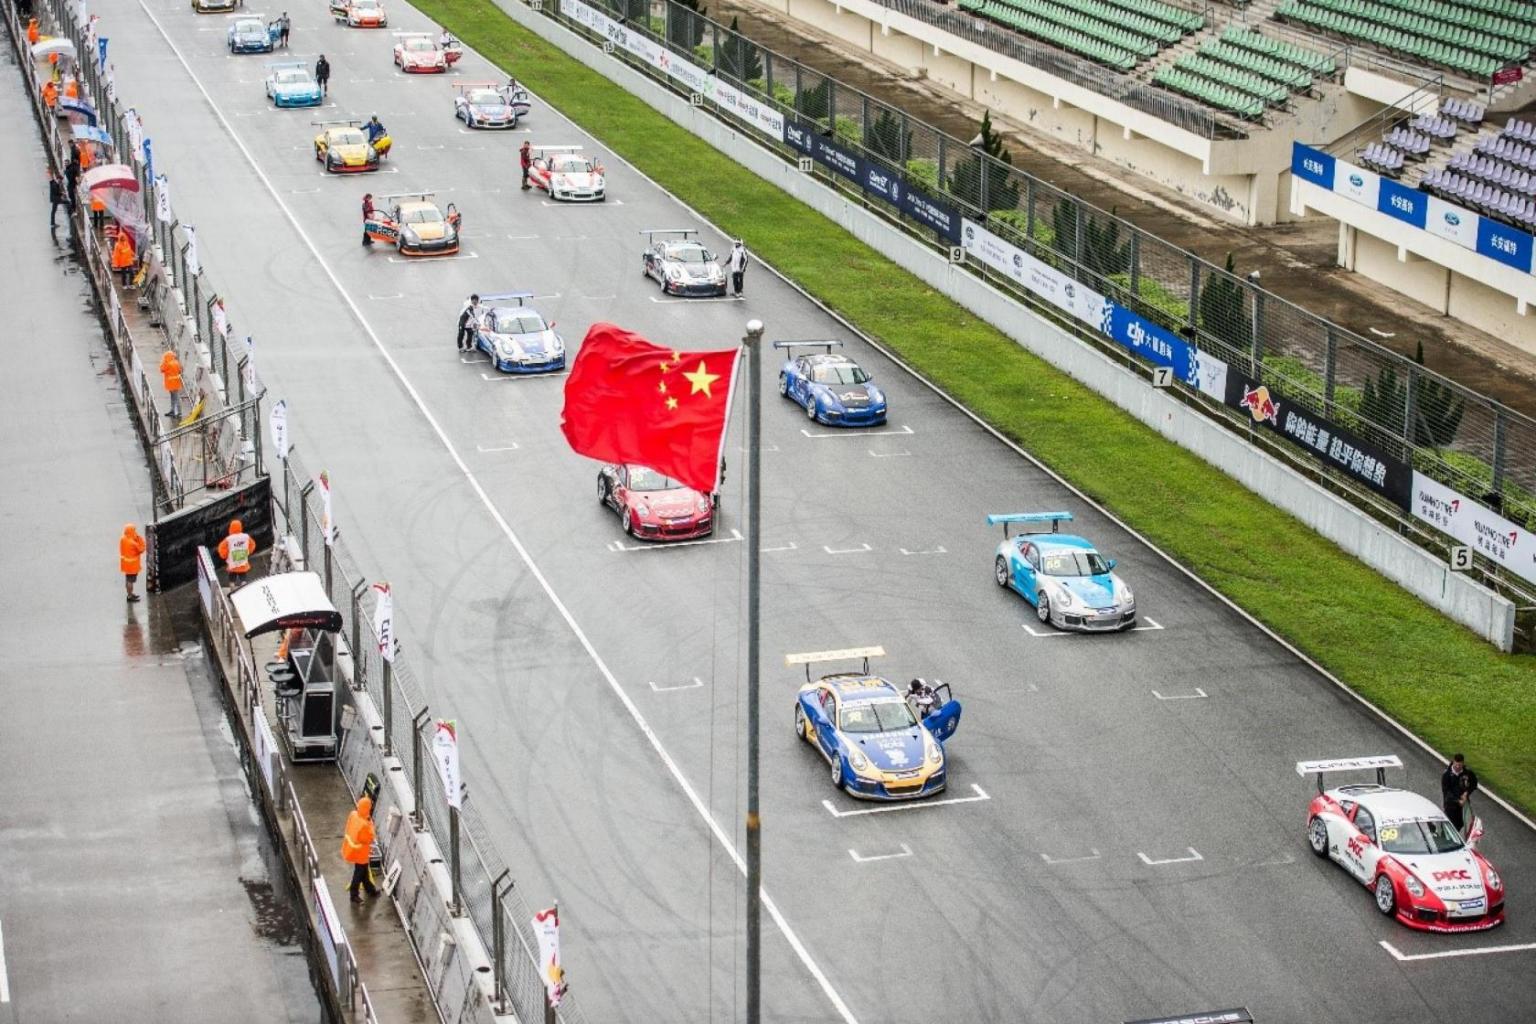 The Porsche Carrera Cup Asia Presented by AximTrade bids farewell